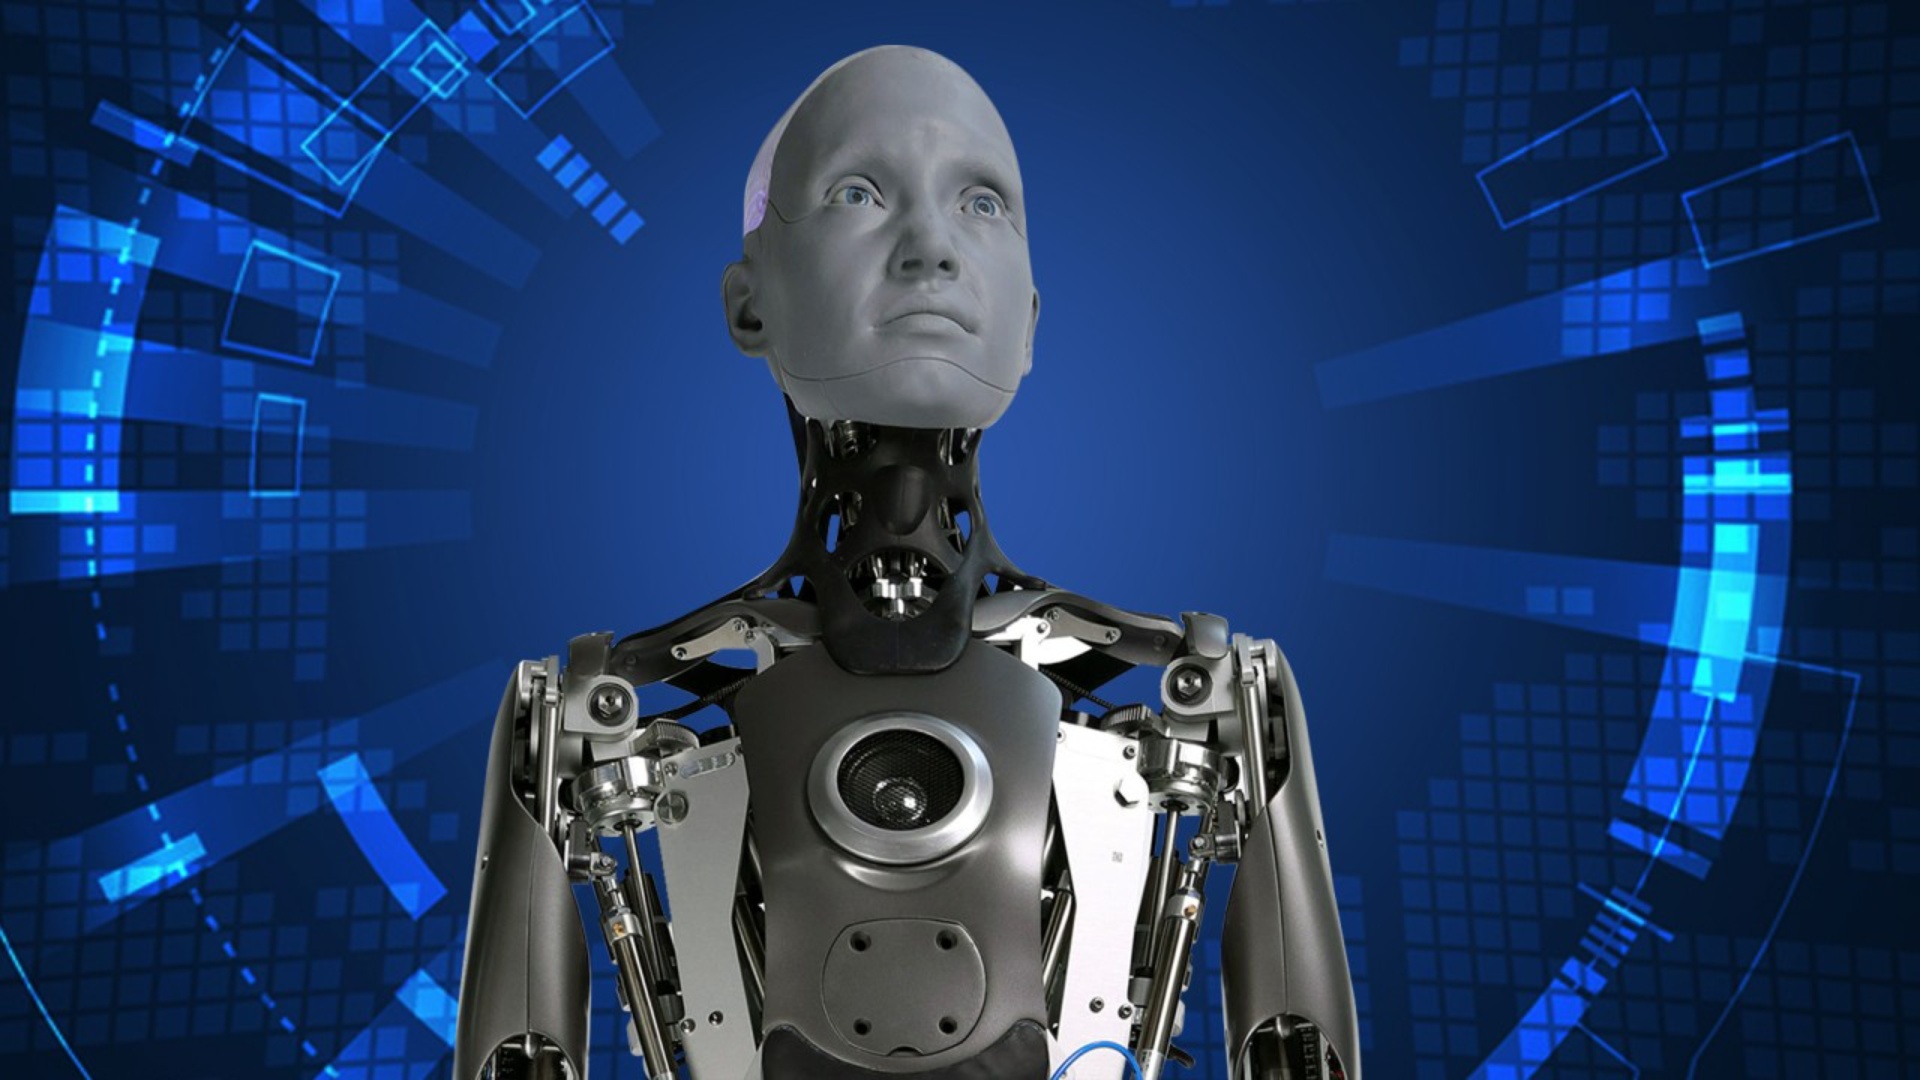 Roboti më i avancuar në botë jep përgjigjen alarmante: “Nuk ka fare nevojë për njerëzit, është një hap larg…”